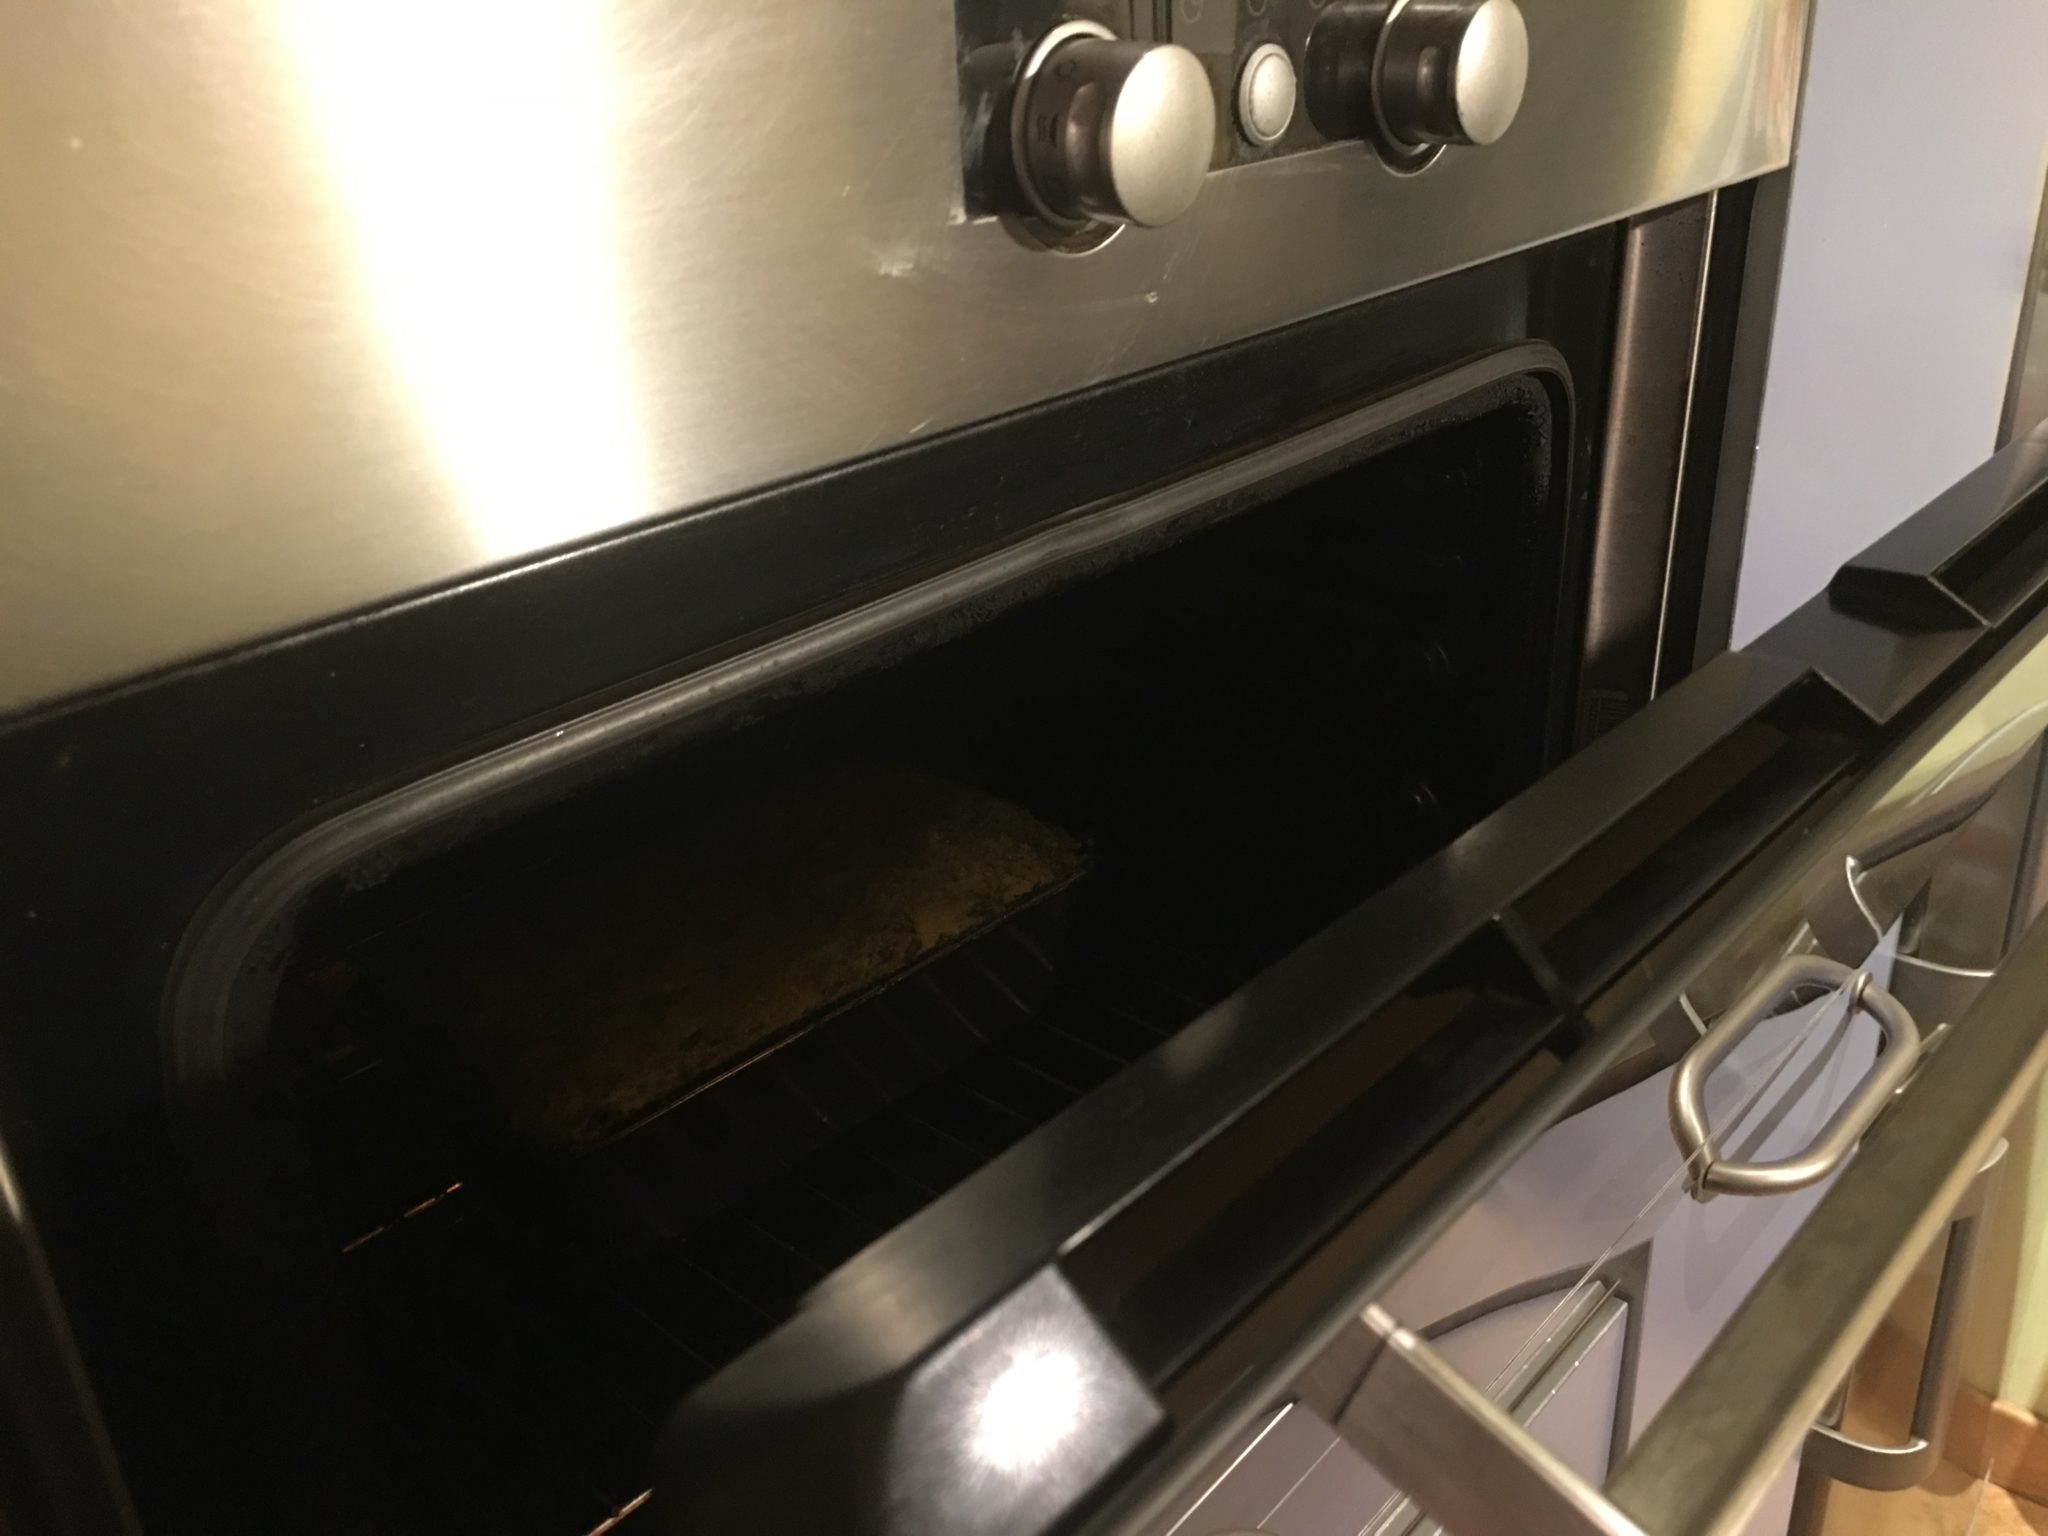 Sformato di friarielli ricotta e patate - lo sformato a raffreddare nel forno spento con lo sportello aperto